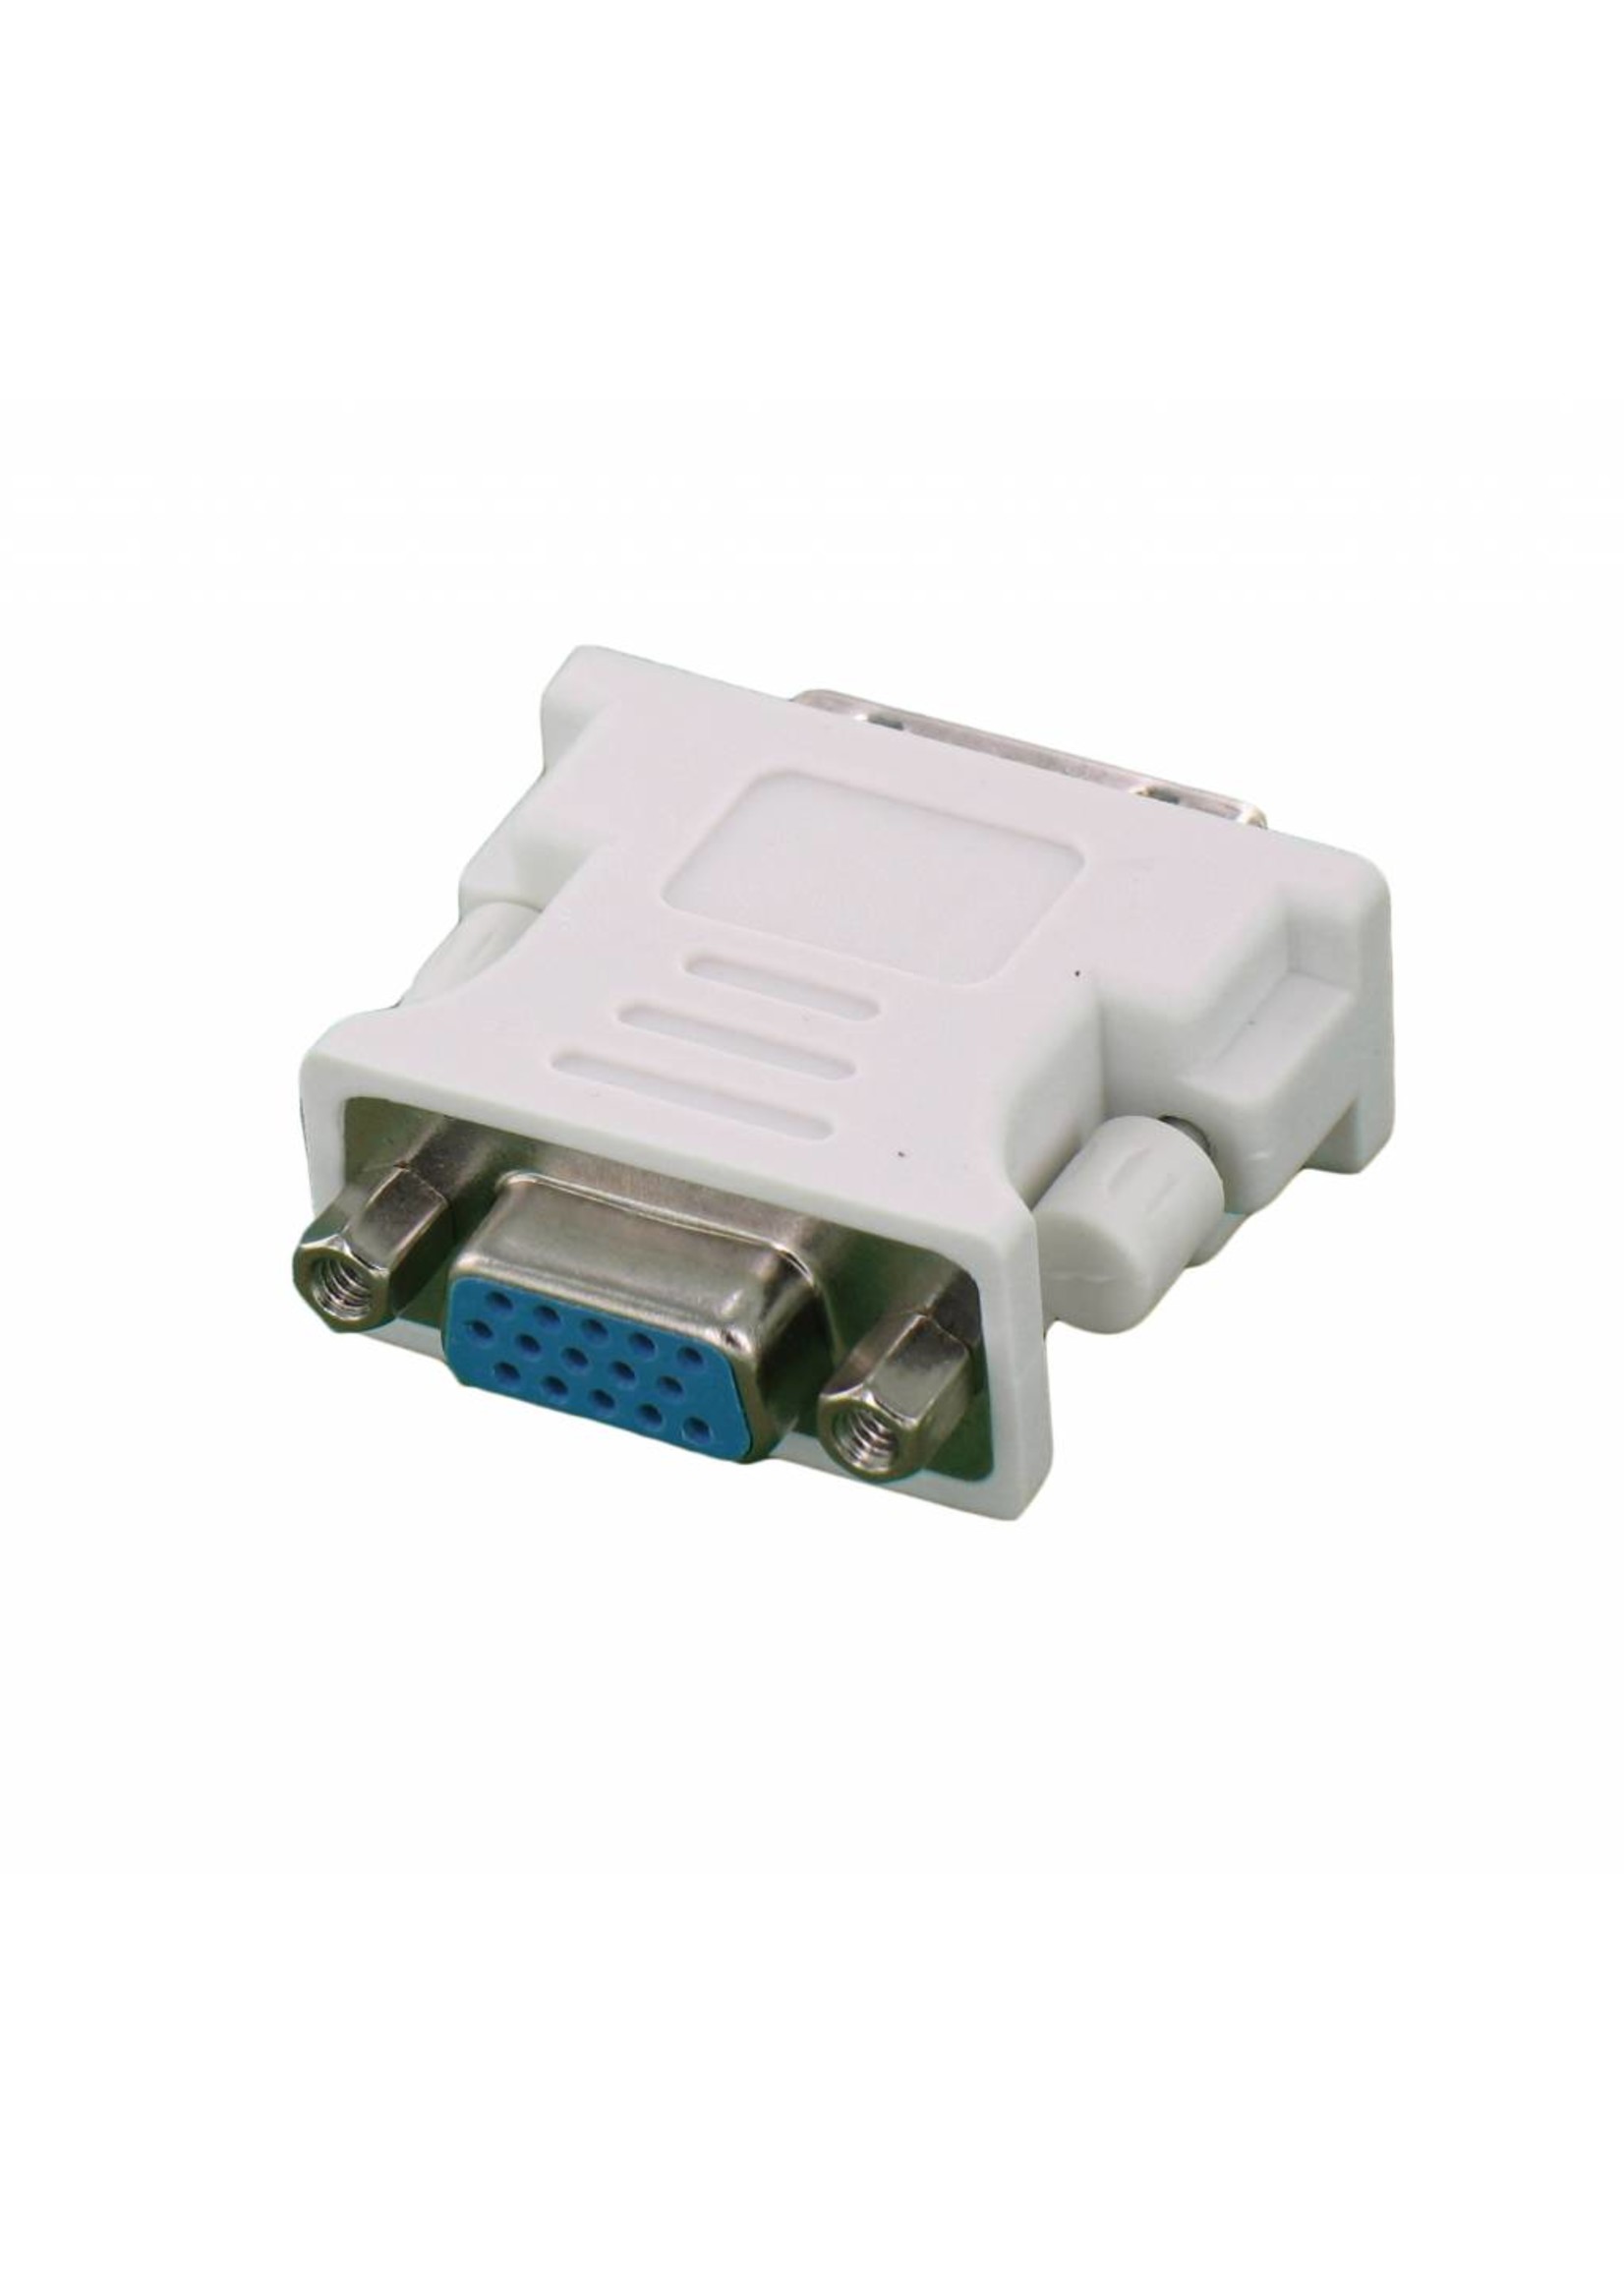 DVI 24 +1 Stecker auf VGA Buchse Adapter